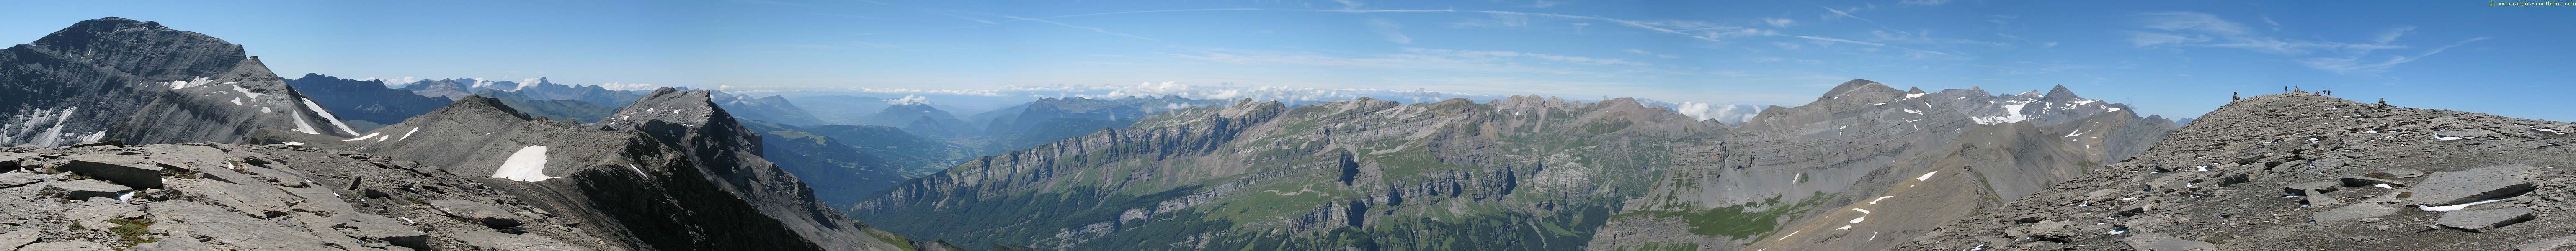 Panorama réalisé depuis le Cheval Blanc, avec le Buet à gauche et le sommet du Cheval Blanc à droite.